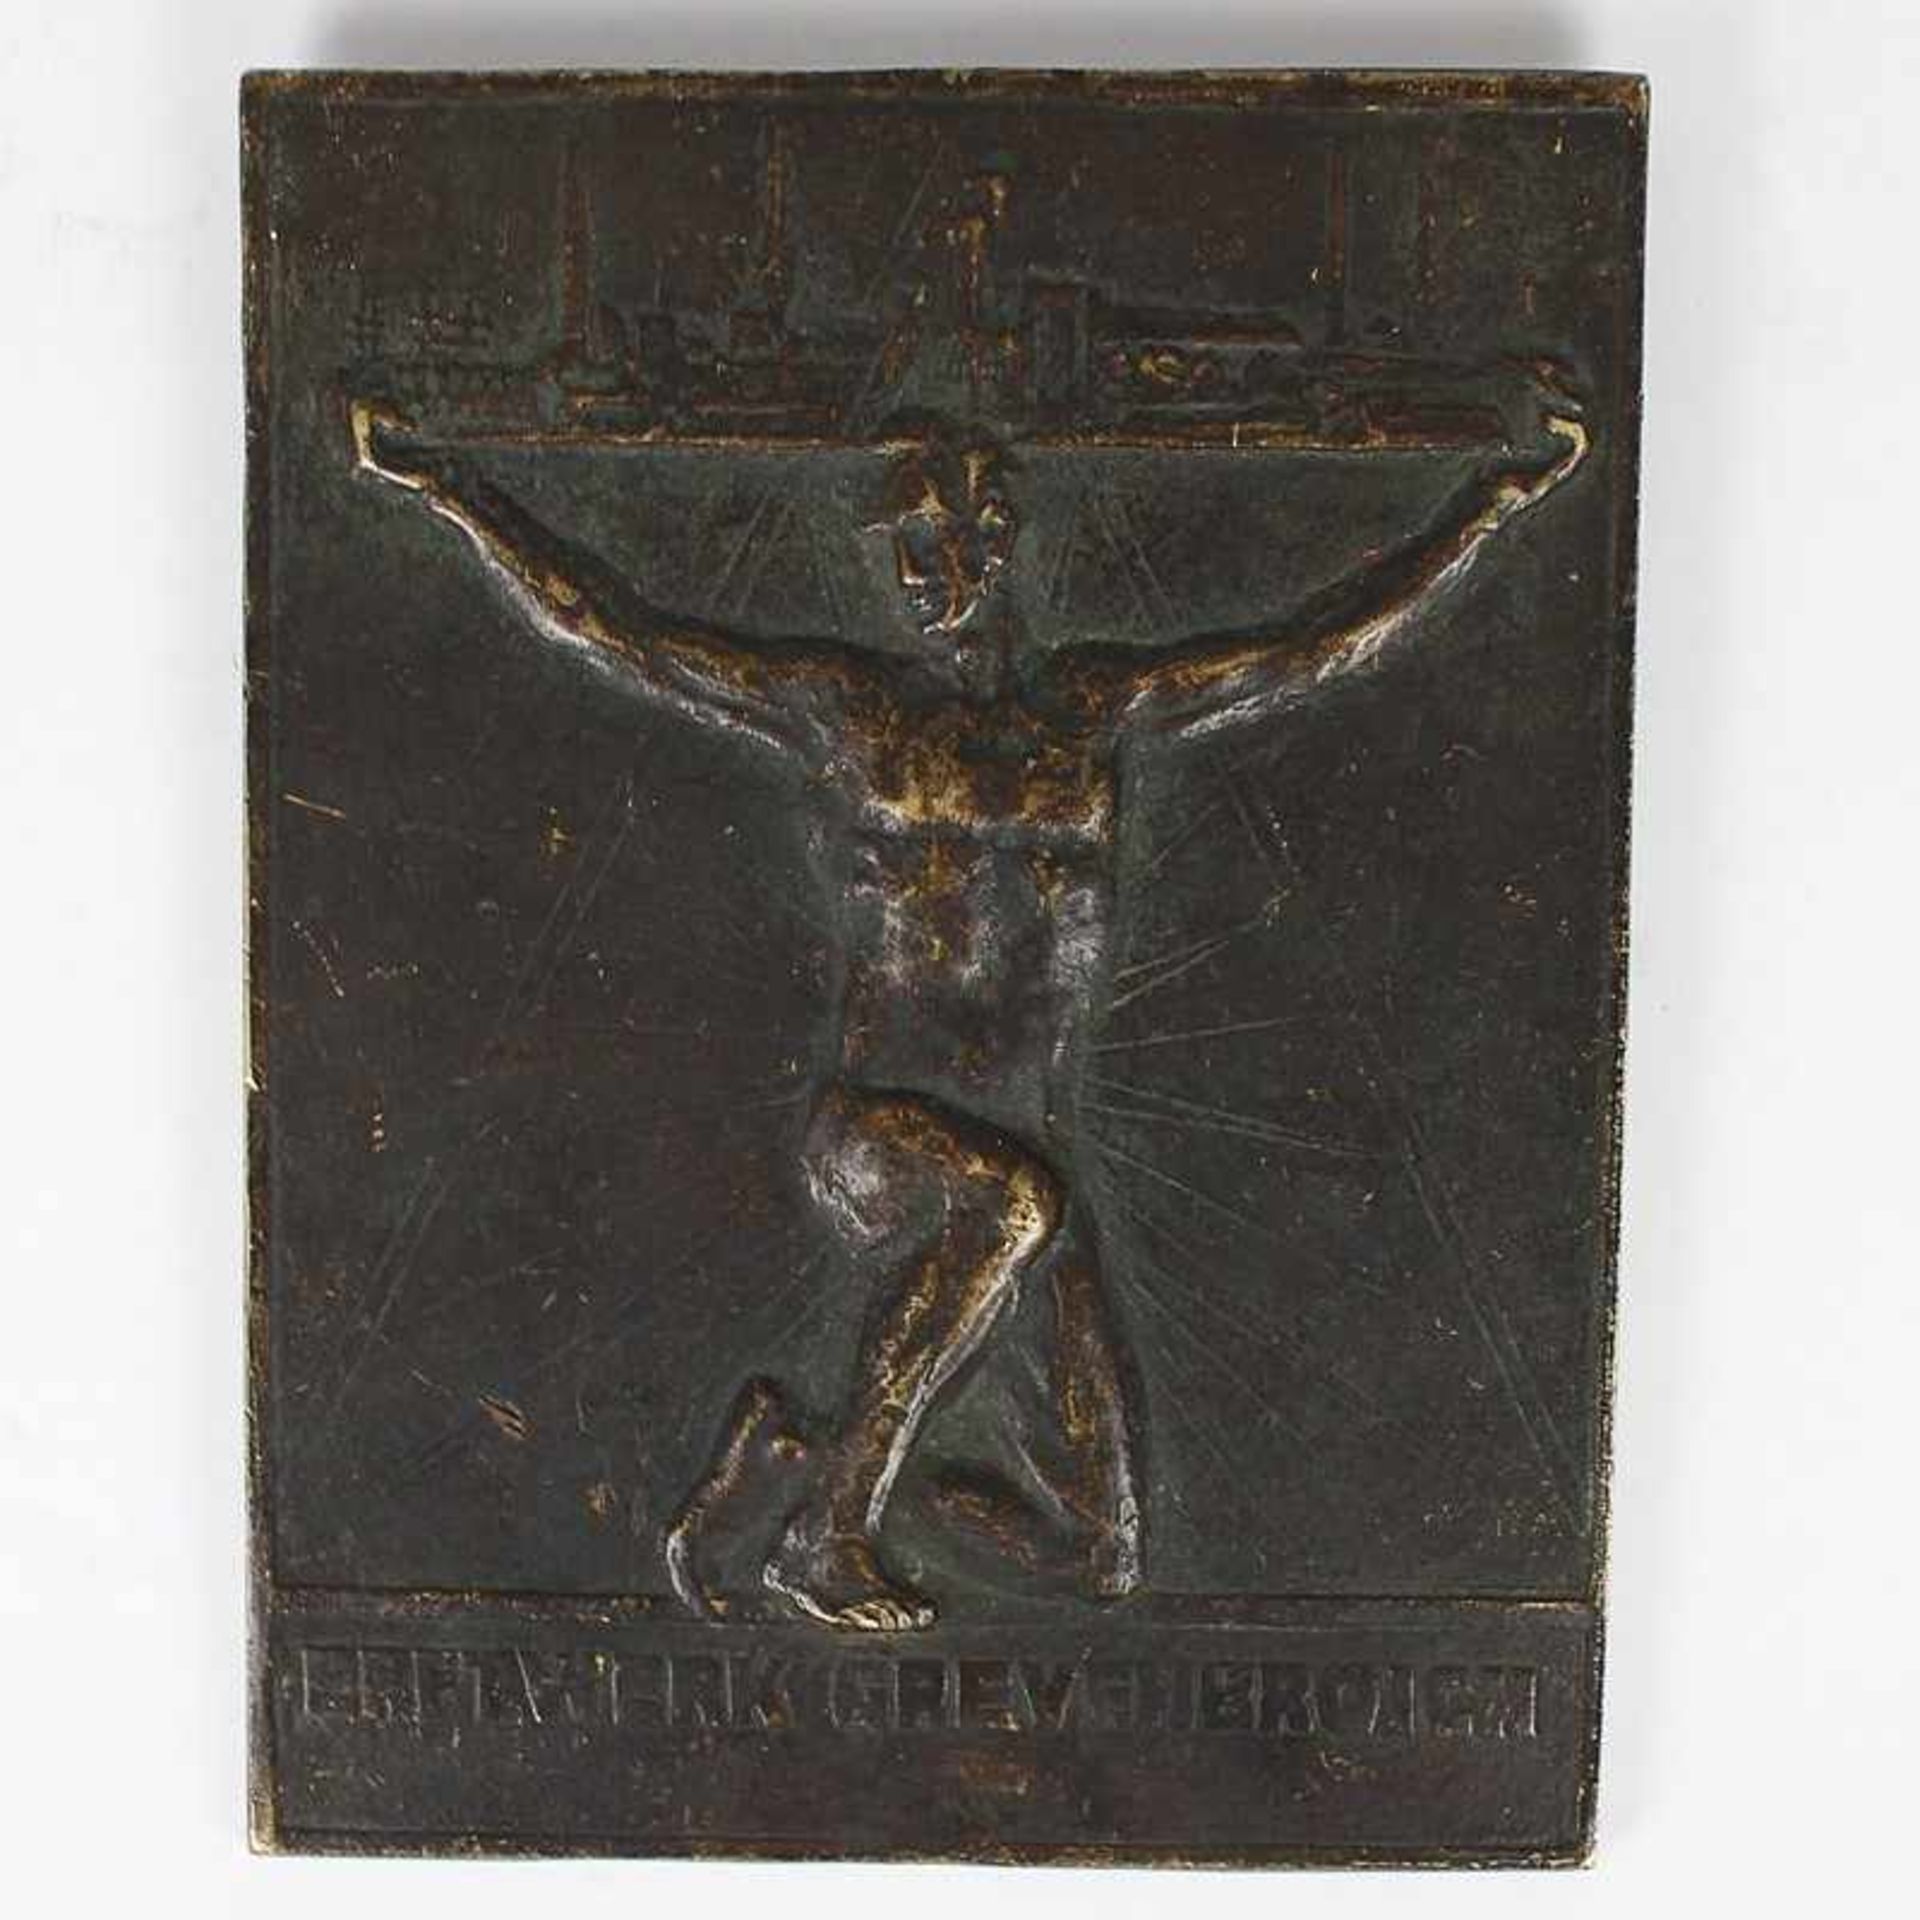 Reliefplatte um1900, Bronze, Friedrich Woehler, 1800-1880, Erftwerk Grevenbroich, sign. Wiese,